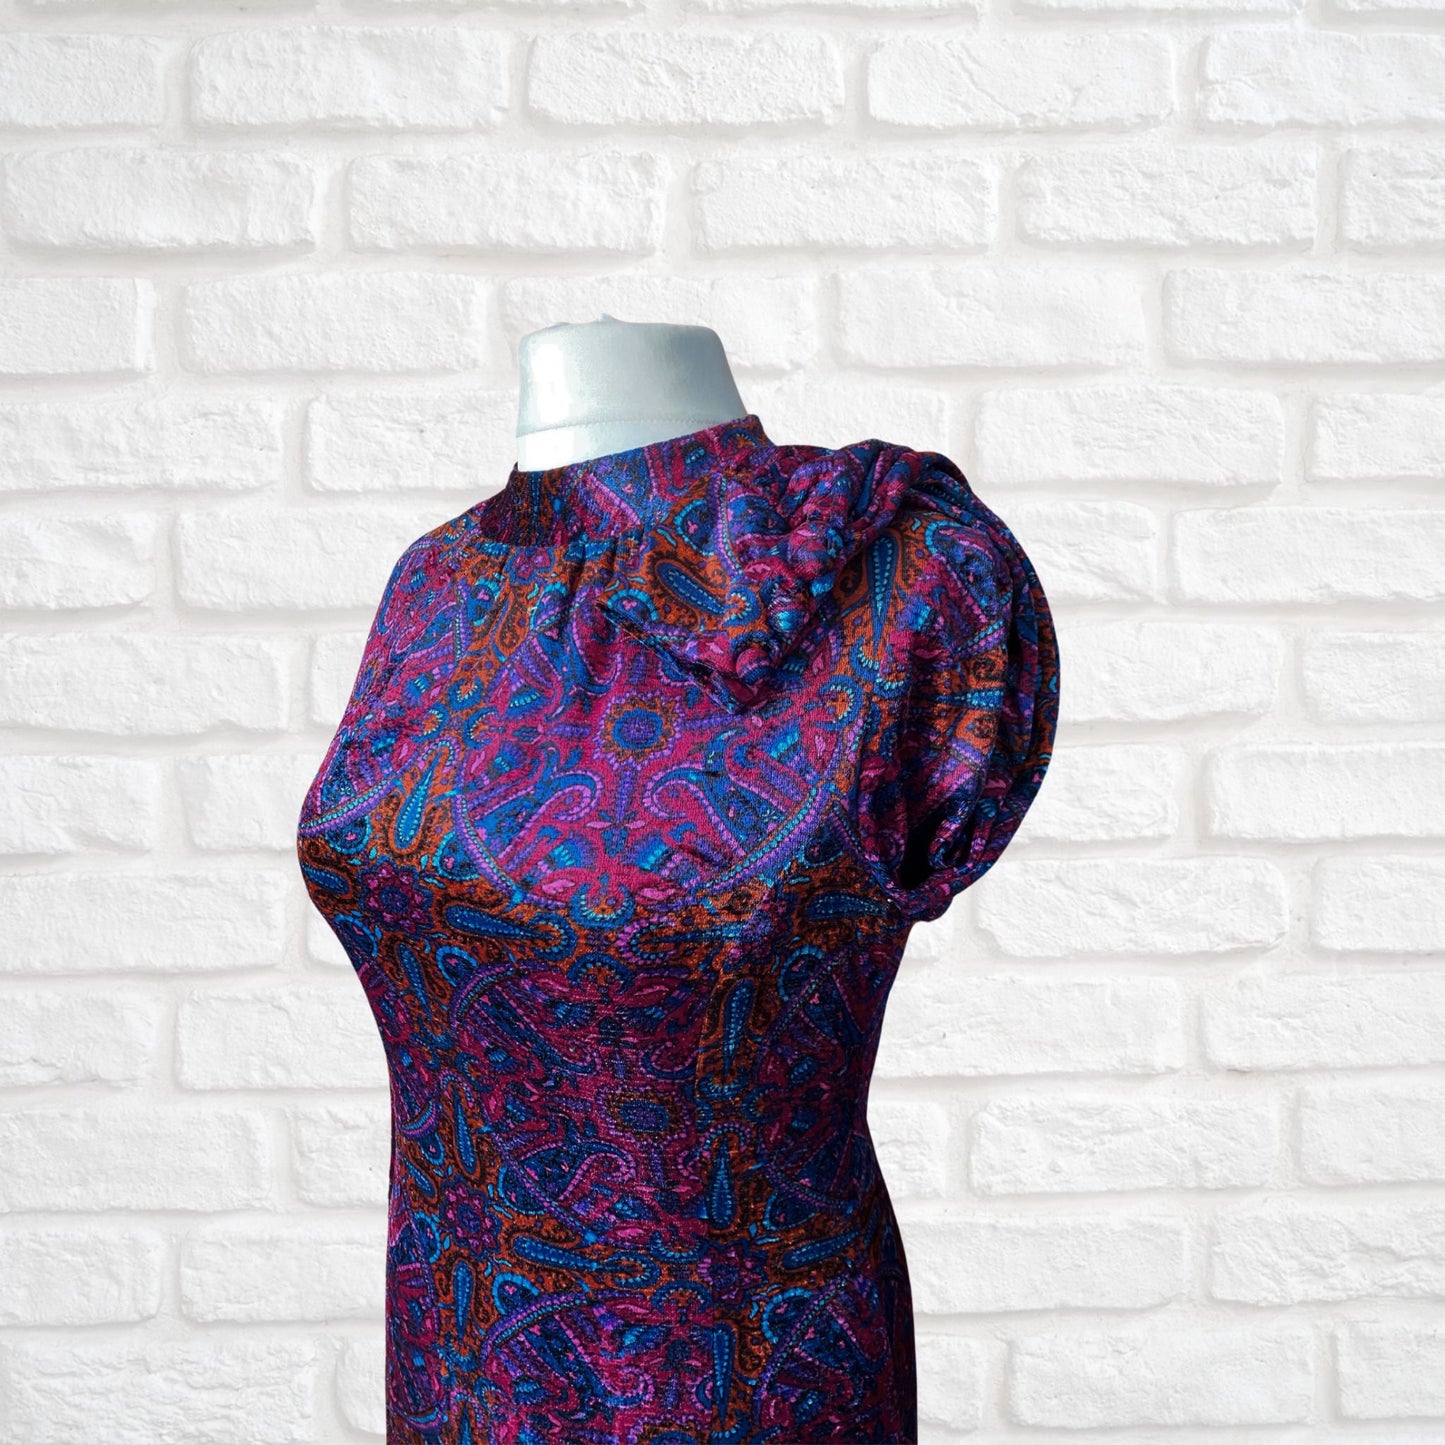 Vintage Velvet Purple Paisley 60s Style A line Dress. Approx UK size 14-16